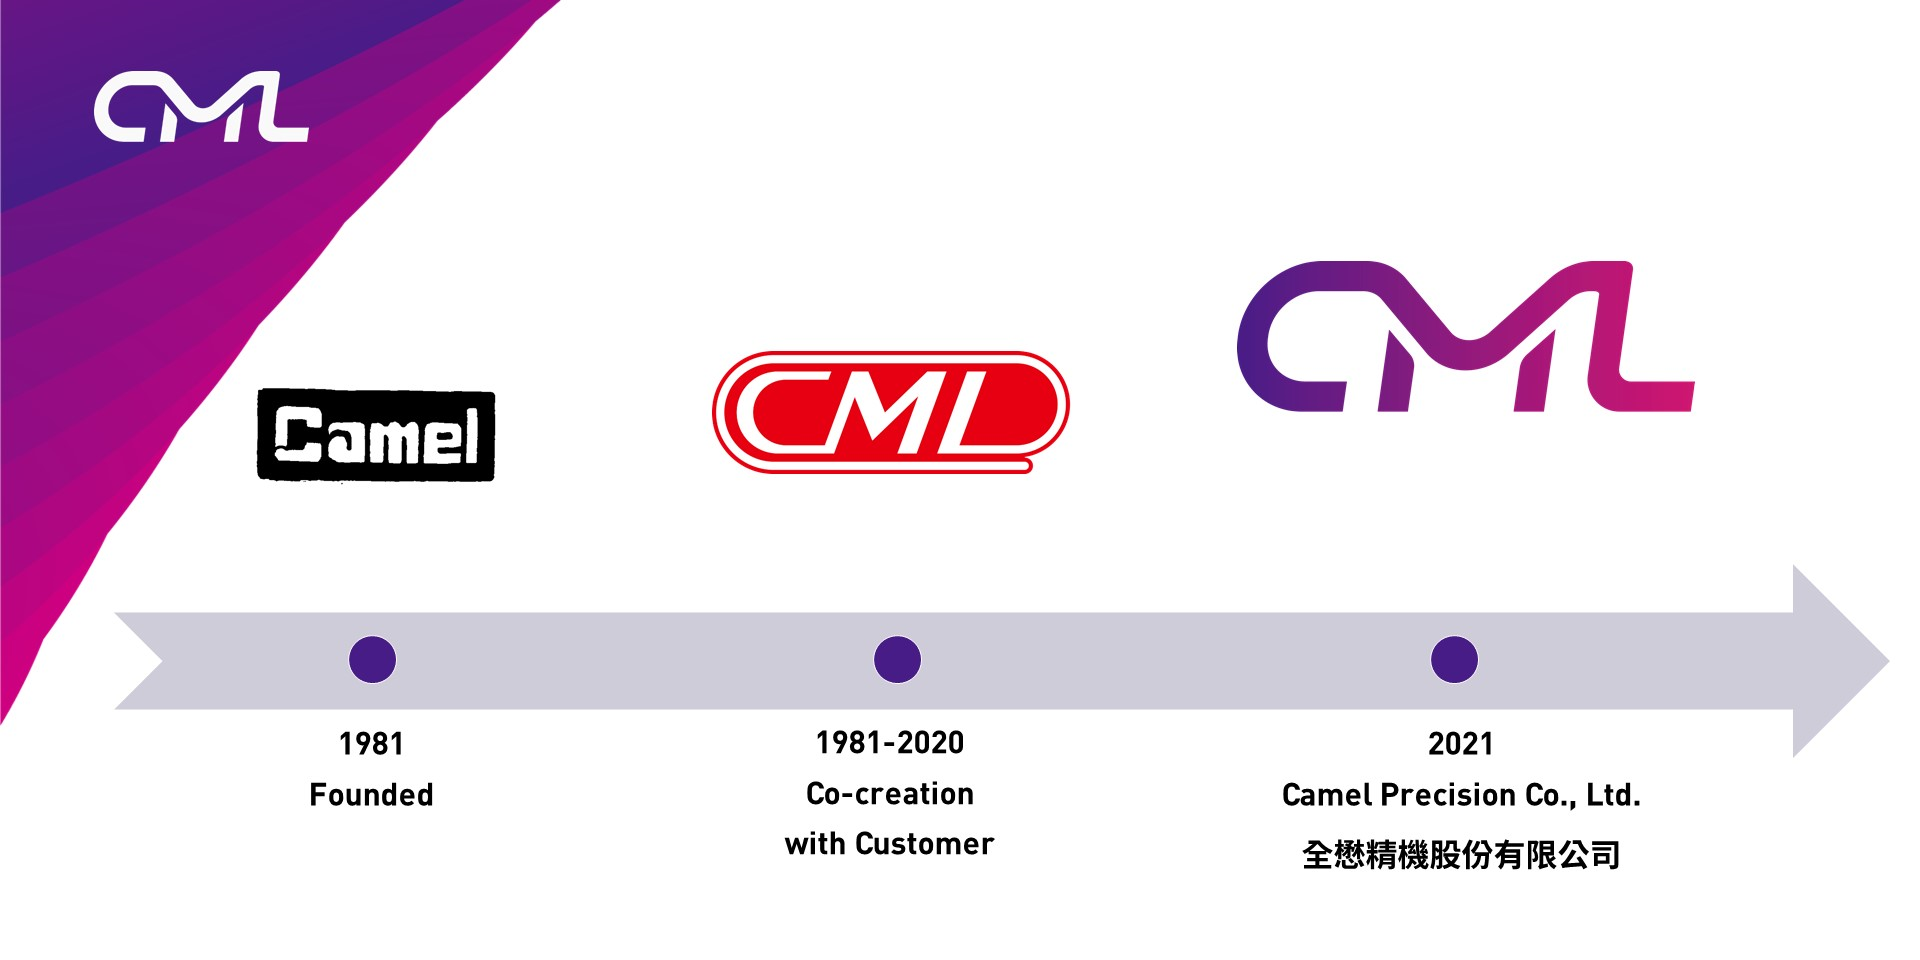 CML ロゴの進化